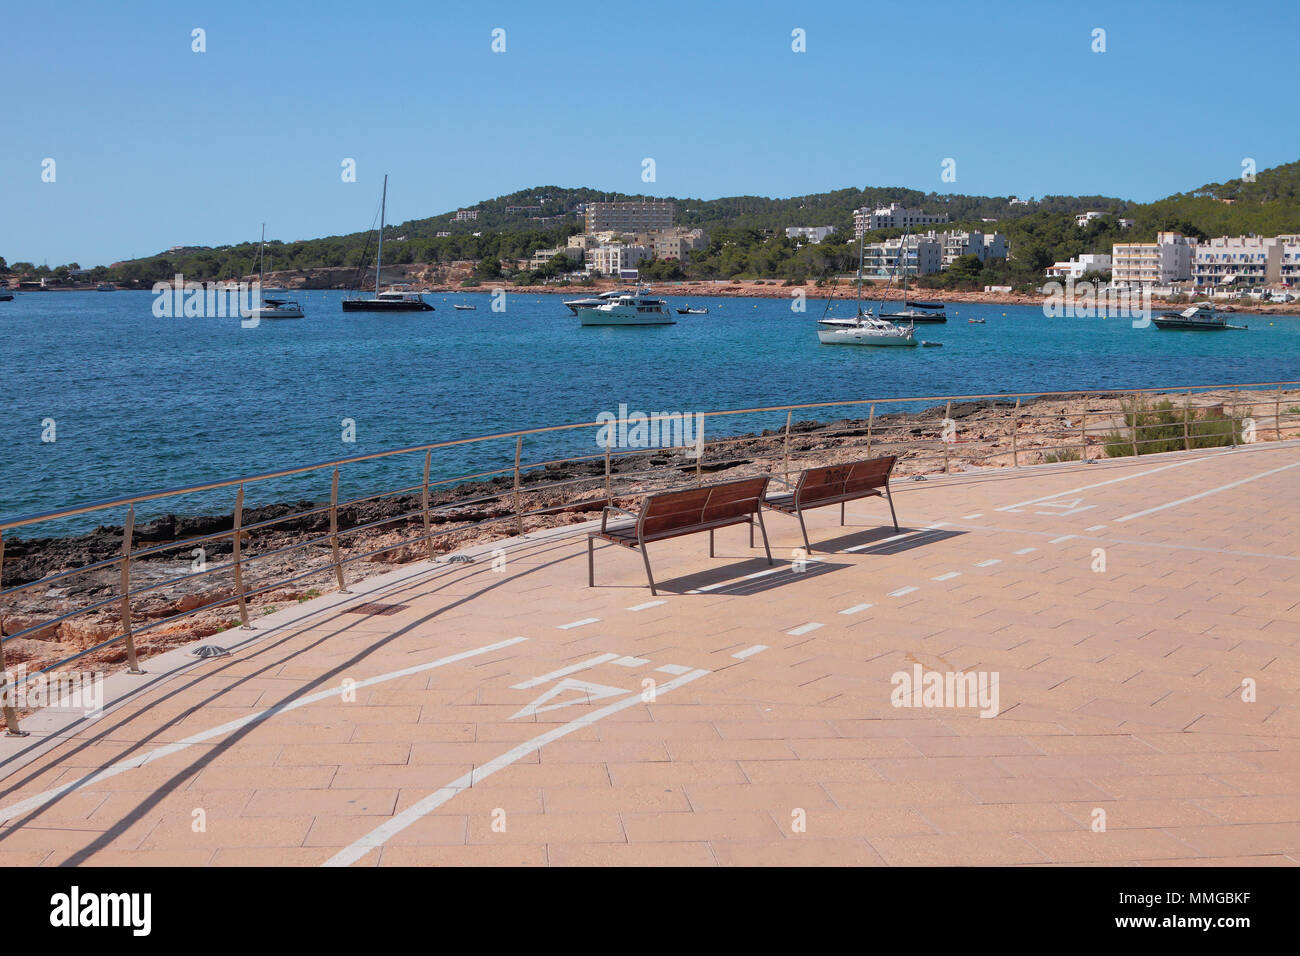 Zone de loisirs avec vue sur baie et stationnement des yachts. San Antonio, Ibiza, Espagne Banque D'Images